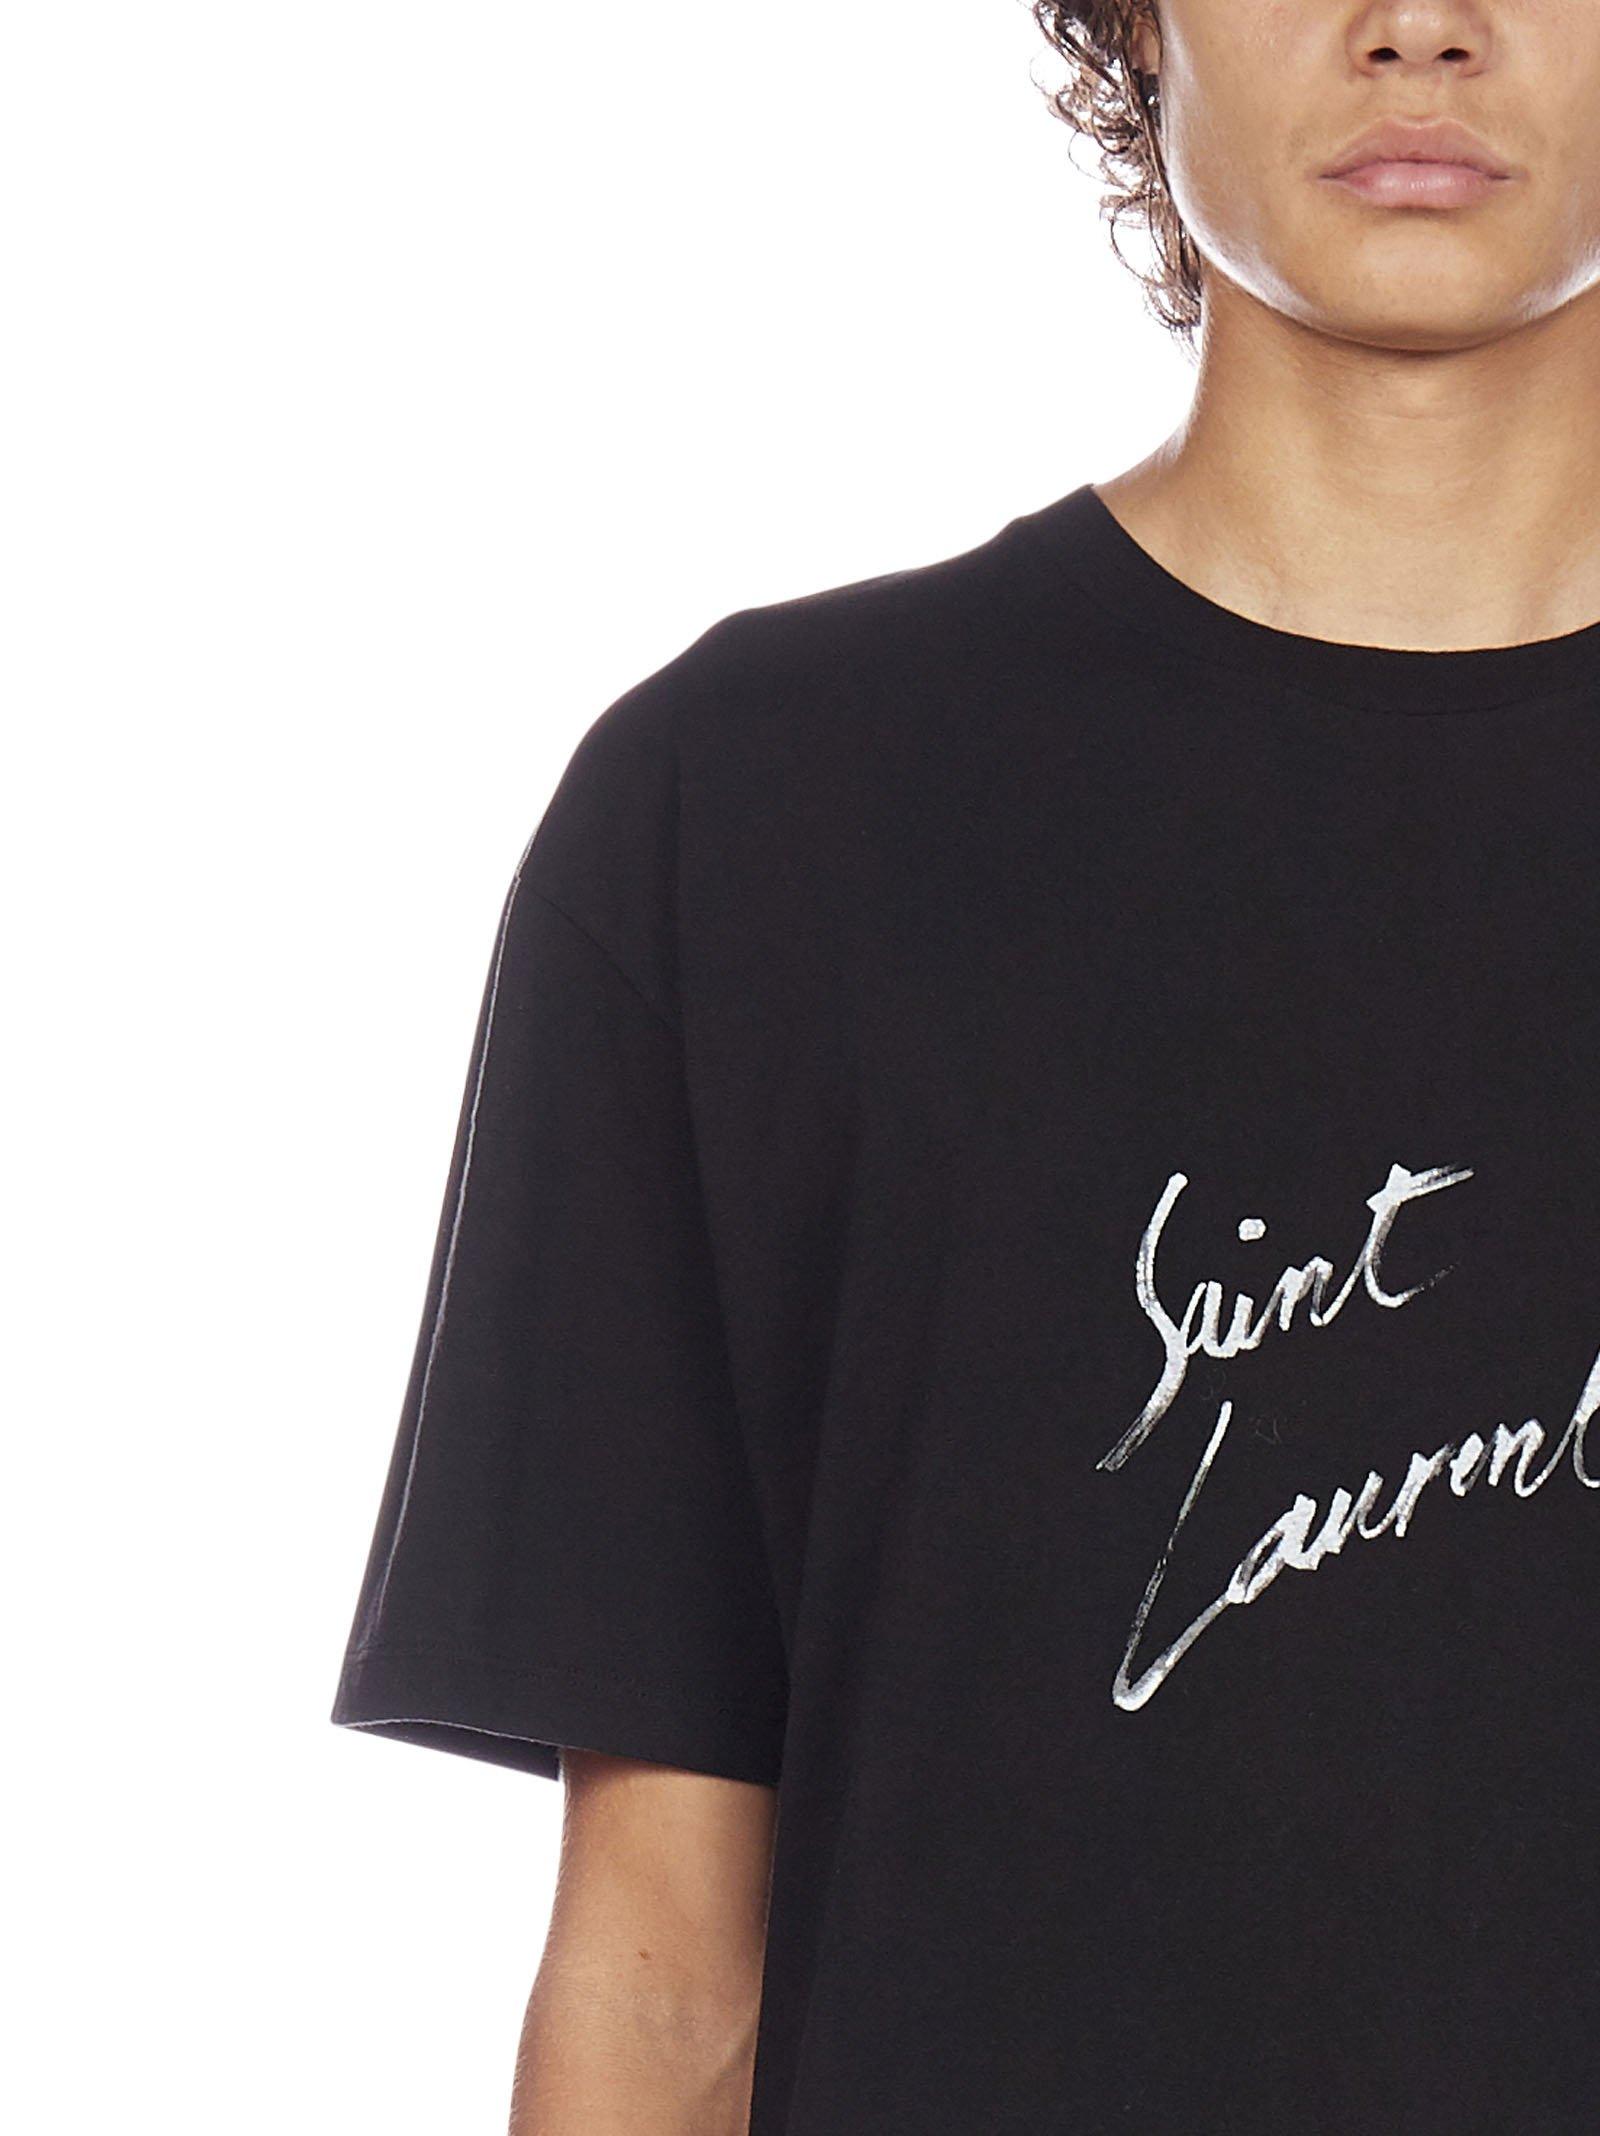 Saint Laurent Cotton Logo Signature T-shirt in Black for Men - Lyst